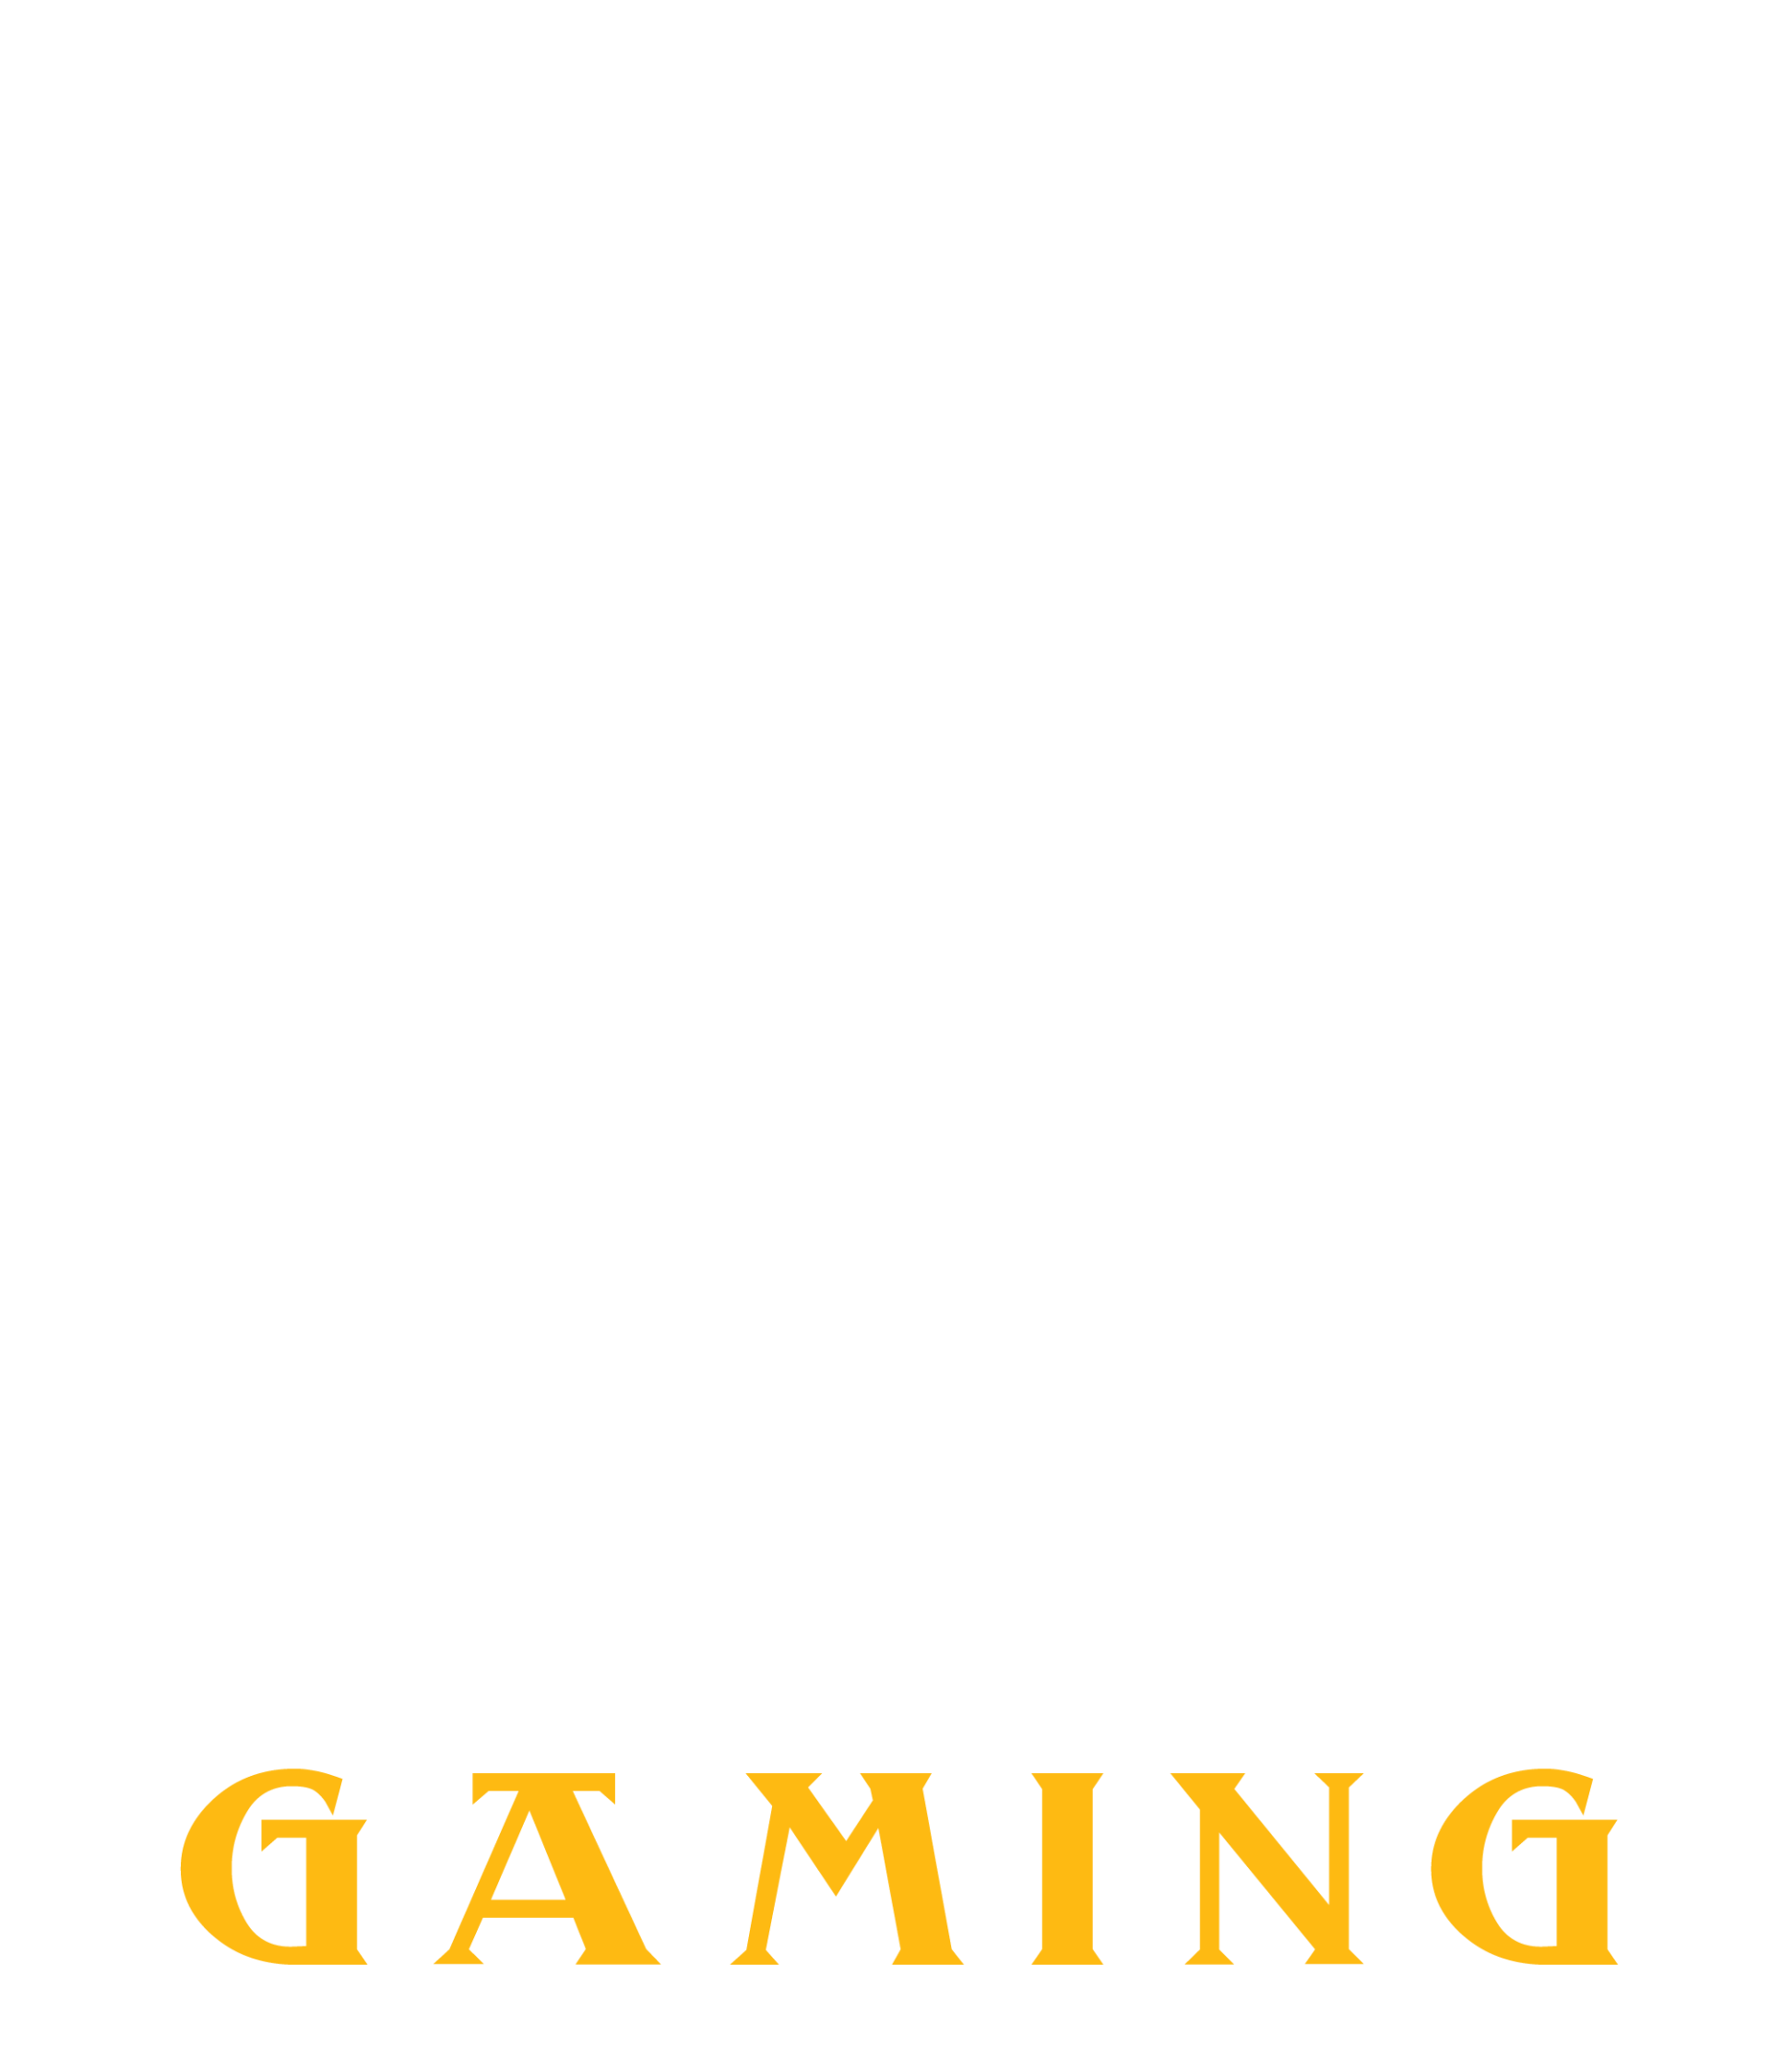 Monk Gaming logo